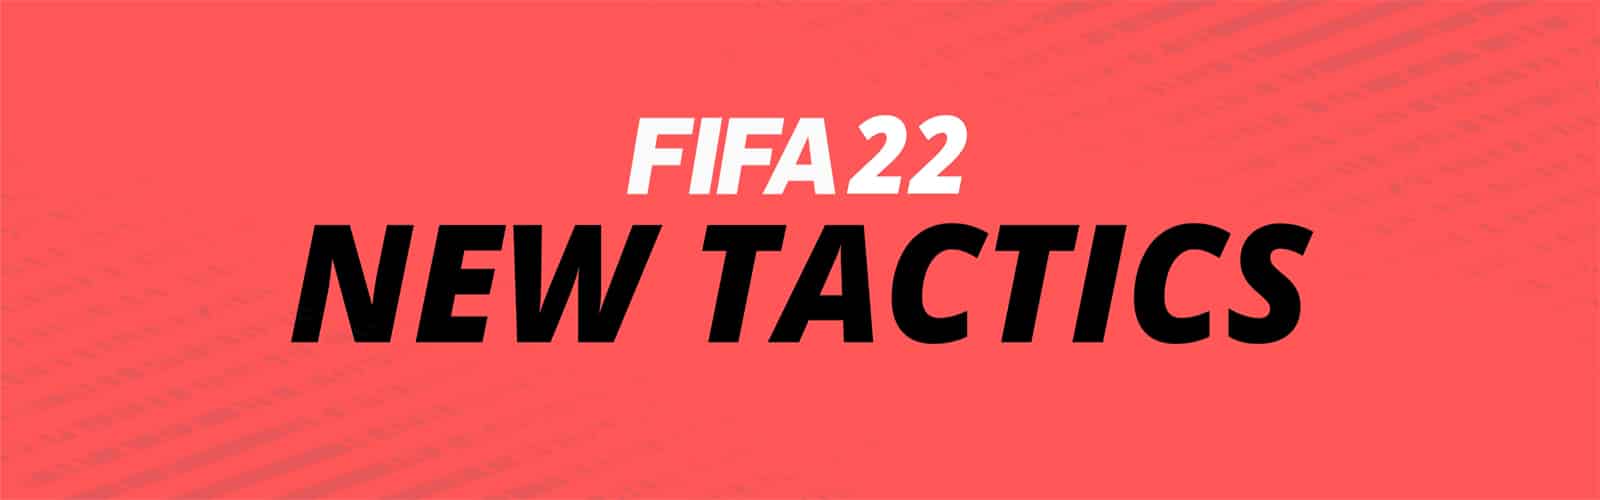 Nouvelles tactiques de Clubs Pro sur FIFA 22